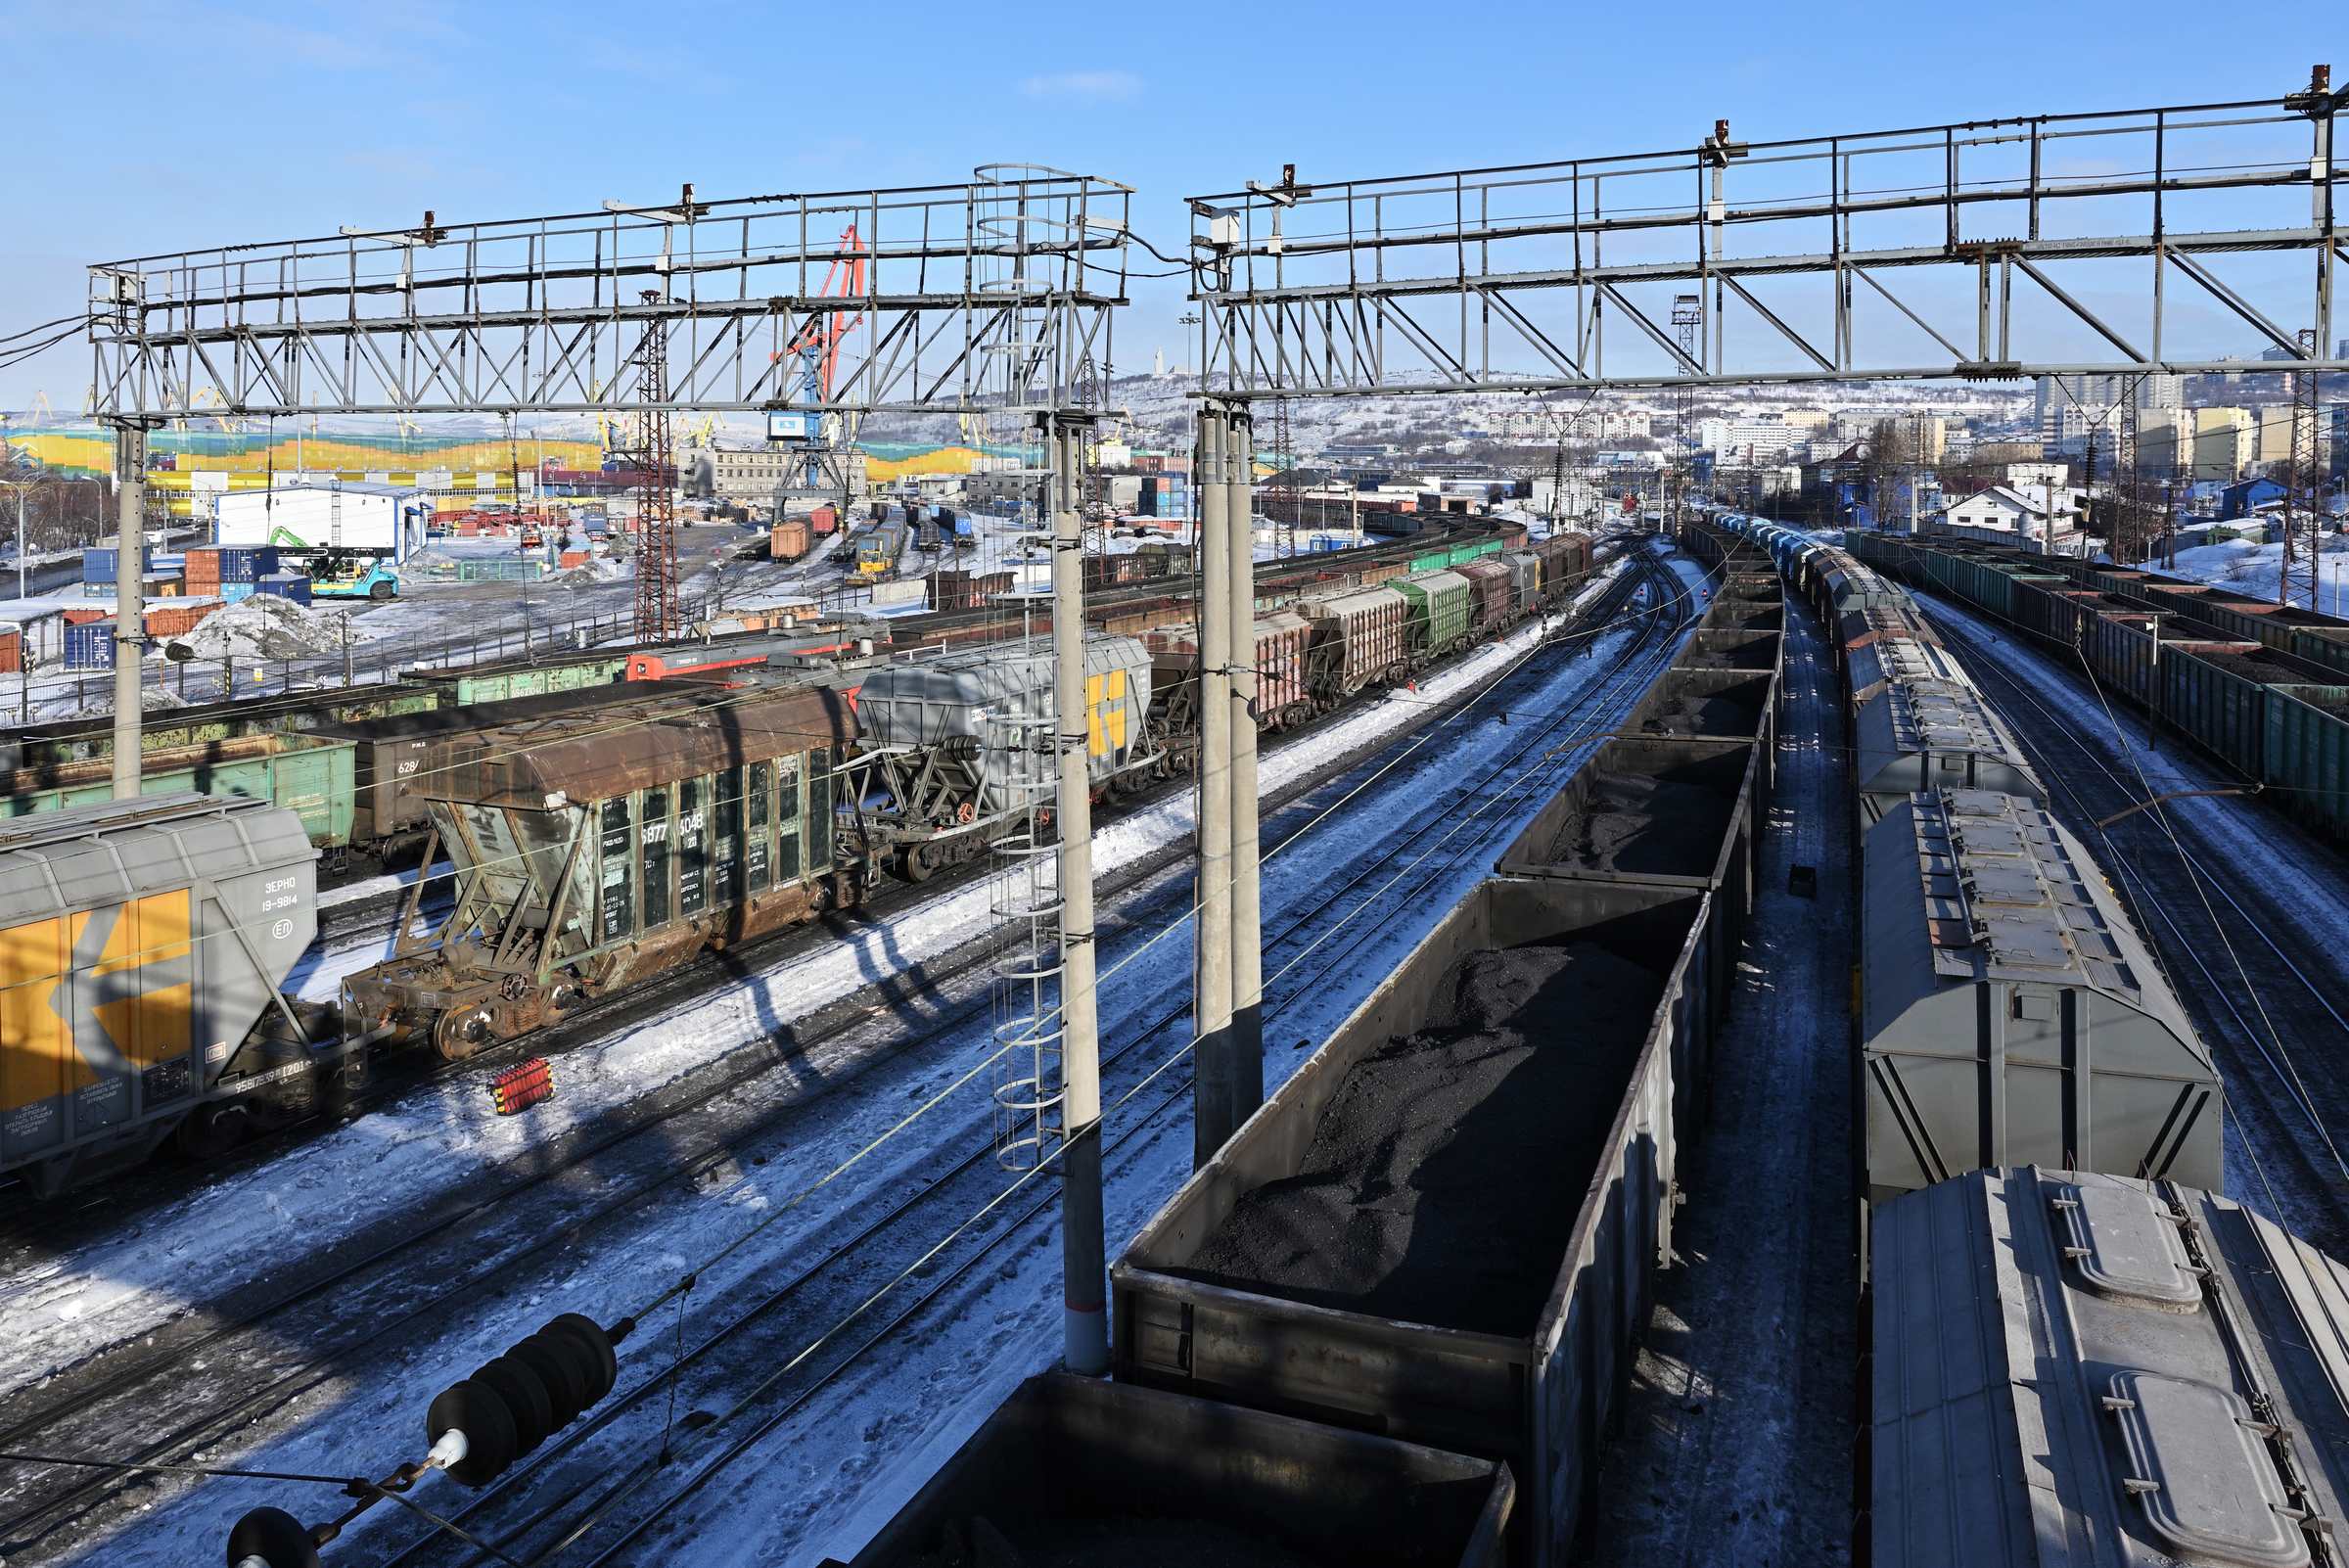 Мурманск в марте. Железнодорожная станция Мурманск.